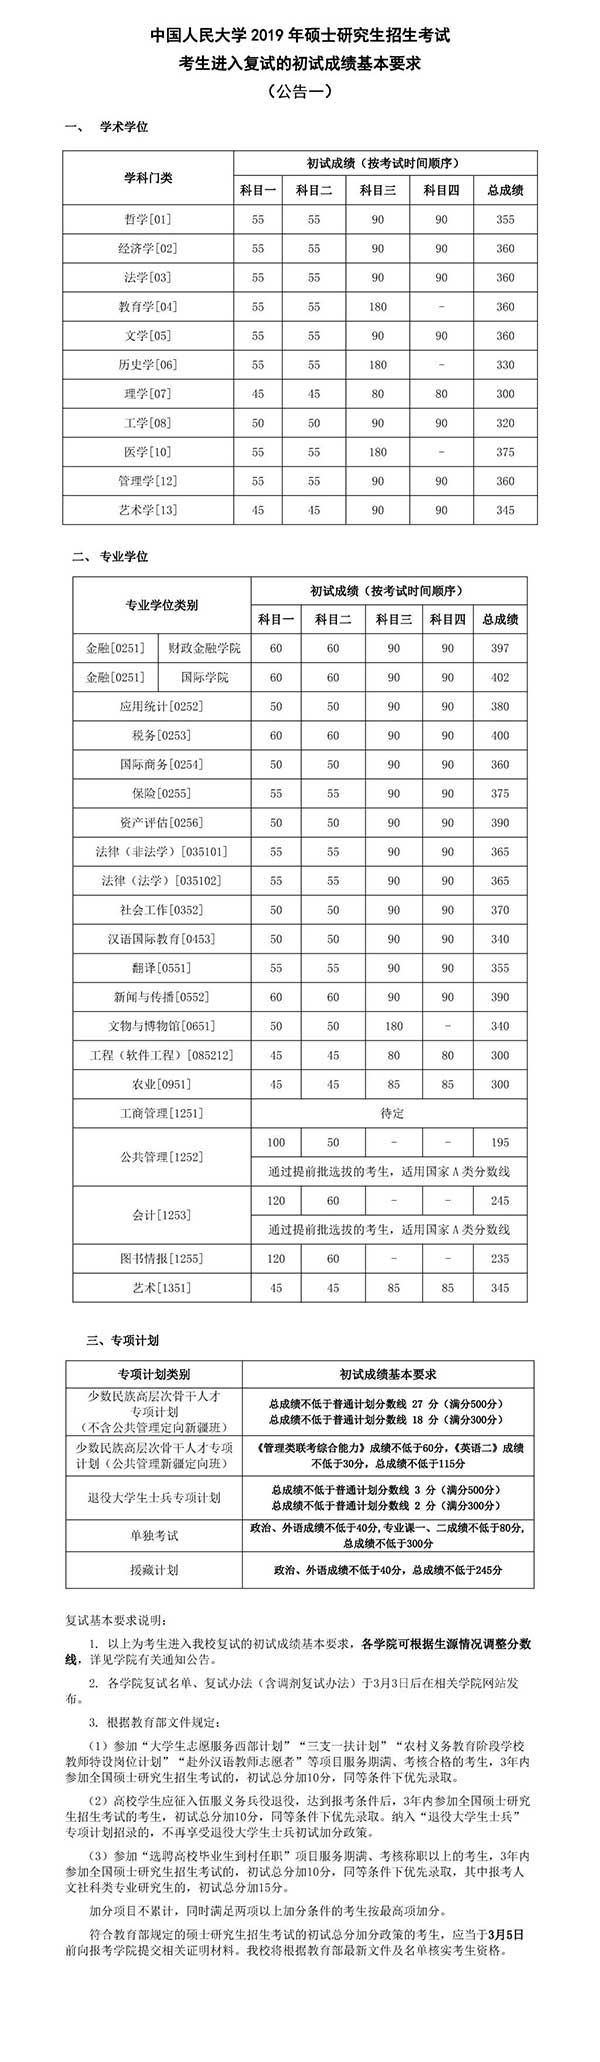 中国人民大学2019考研复试分数线.jpg